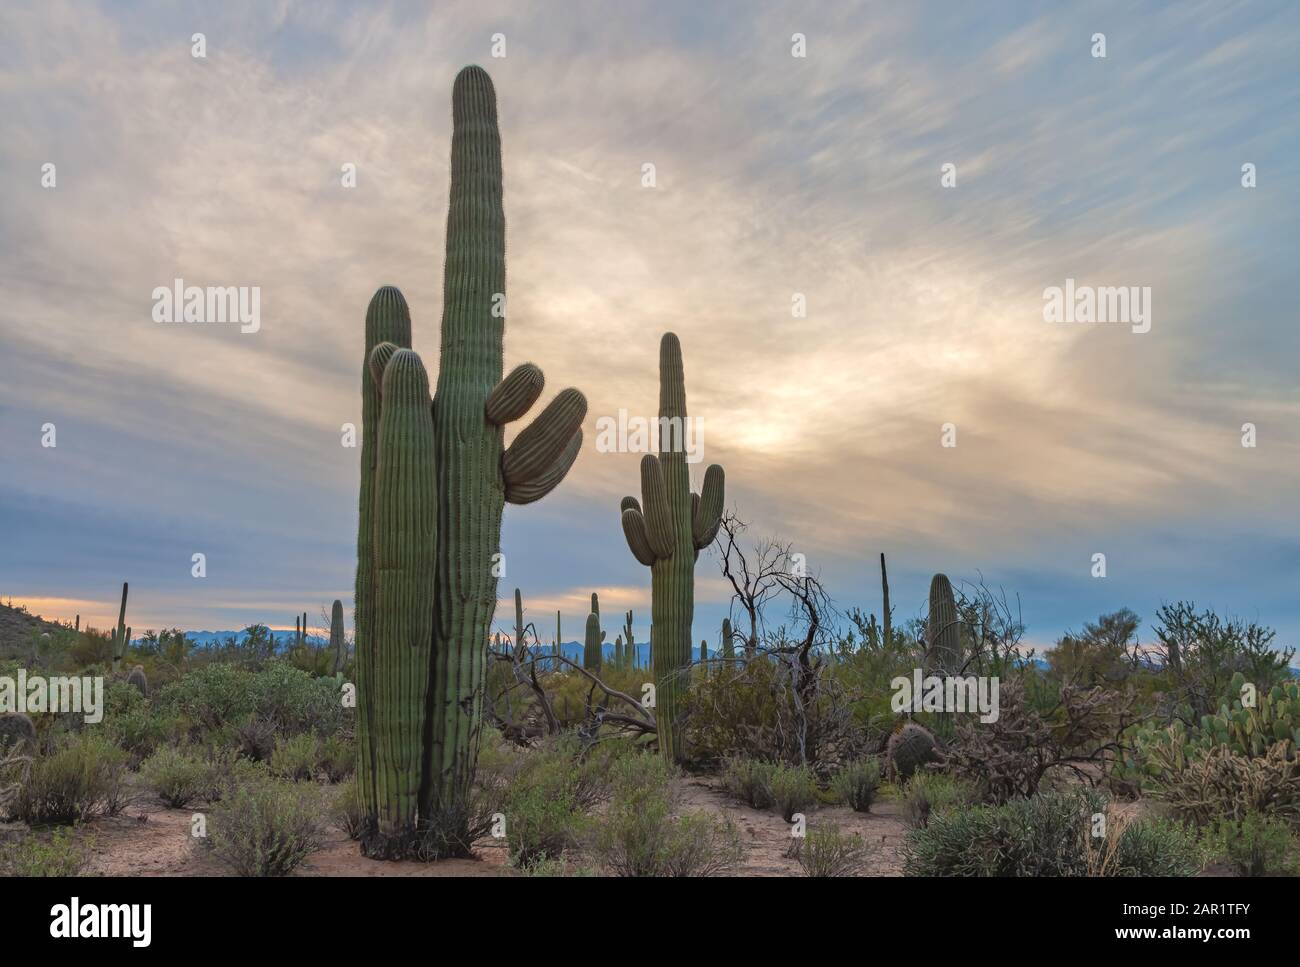 https://c8.alamy.com/compes/2ar1tfy/saguaro-cactus-en-el-parque-nacional-saguaro-en-una-noche-de-invierno-tucson-arizona-estados-unidos-2ar1tfy.jpg